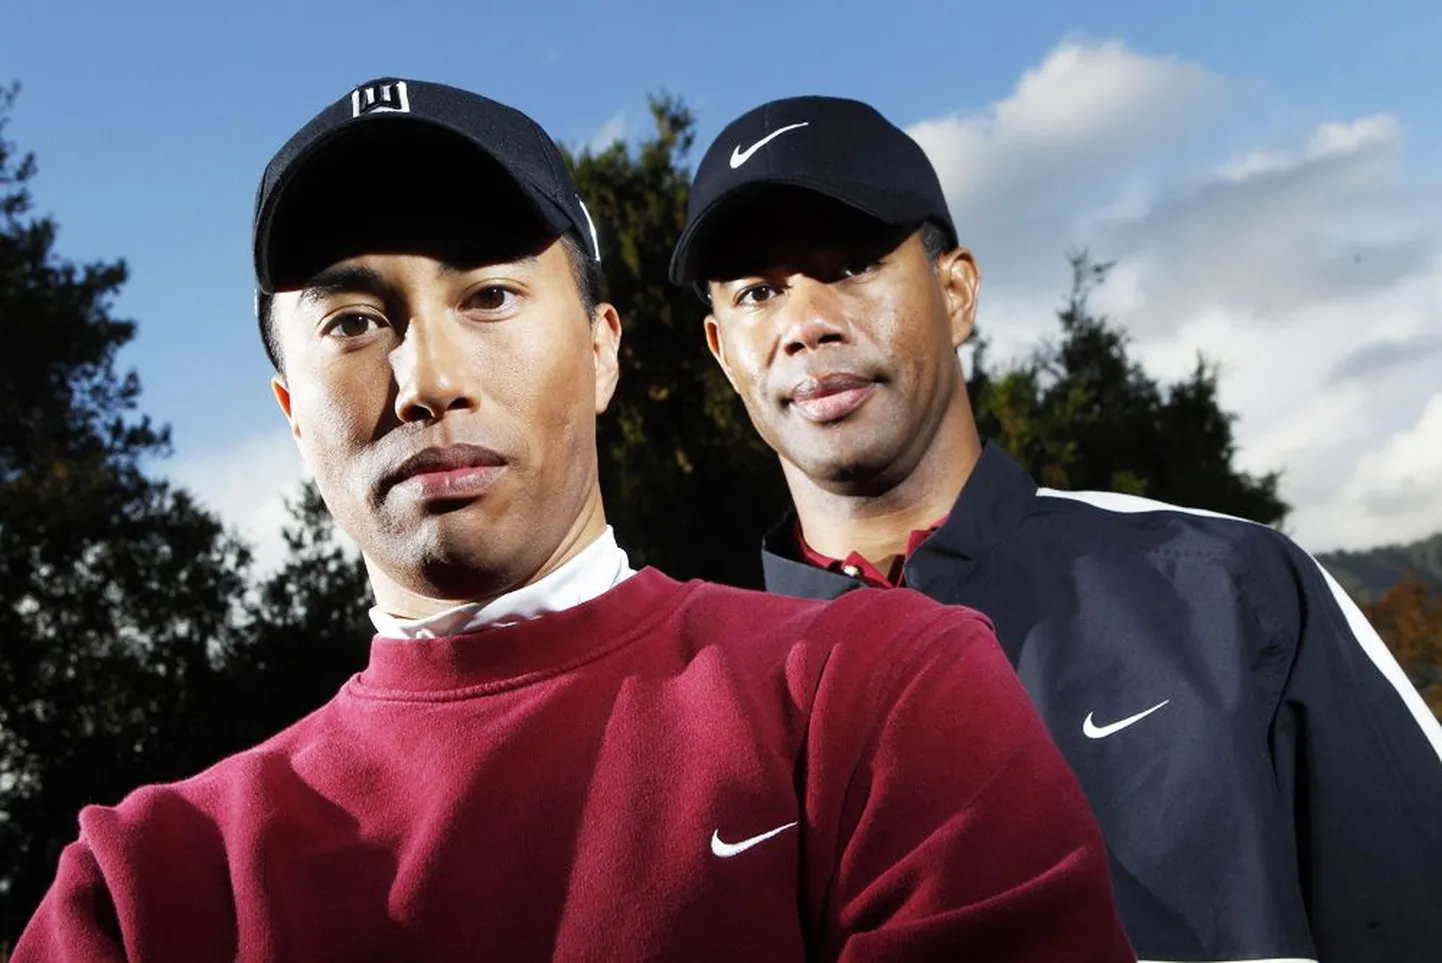 Tiger Woodsi teisikud Herme Chua (vasakul) ja Canh Oxelson on pärast staari seksiskandaali paljudest pakkumistest ilma jäänud.